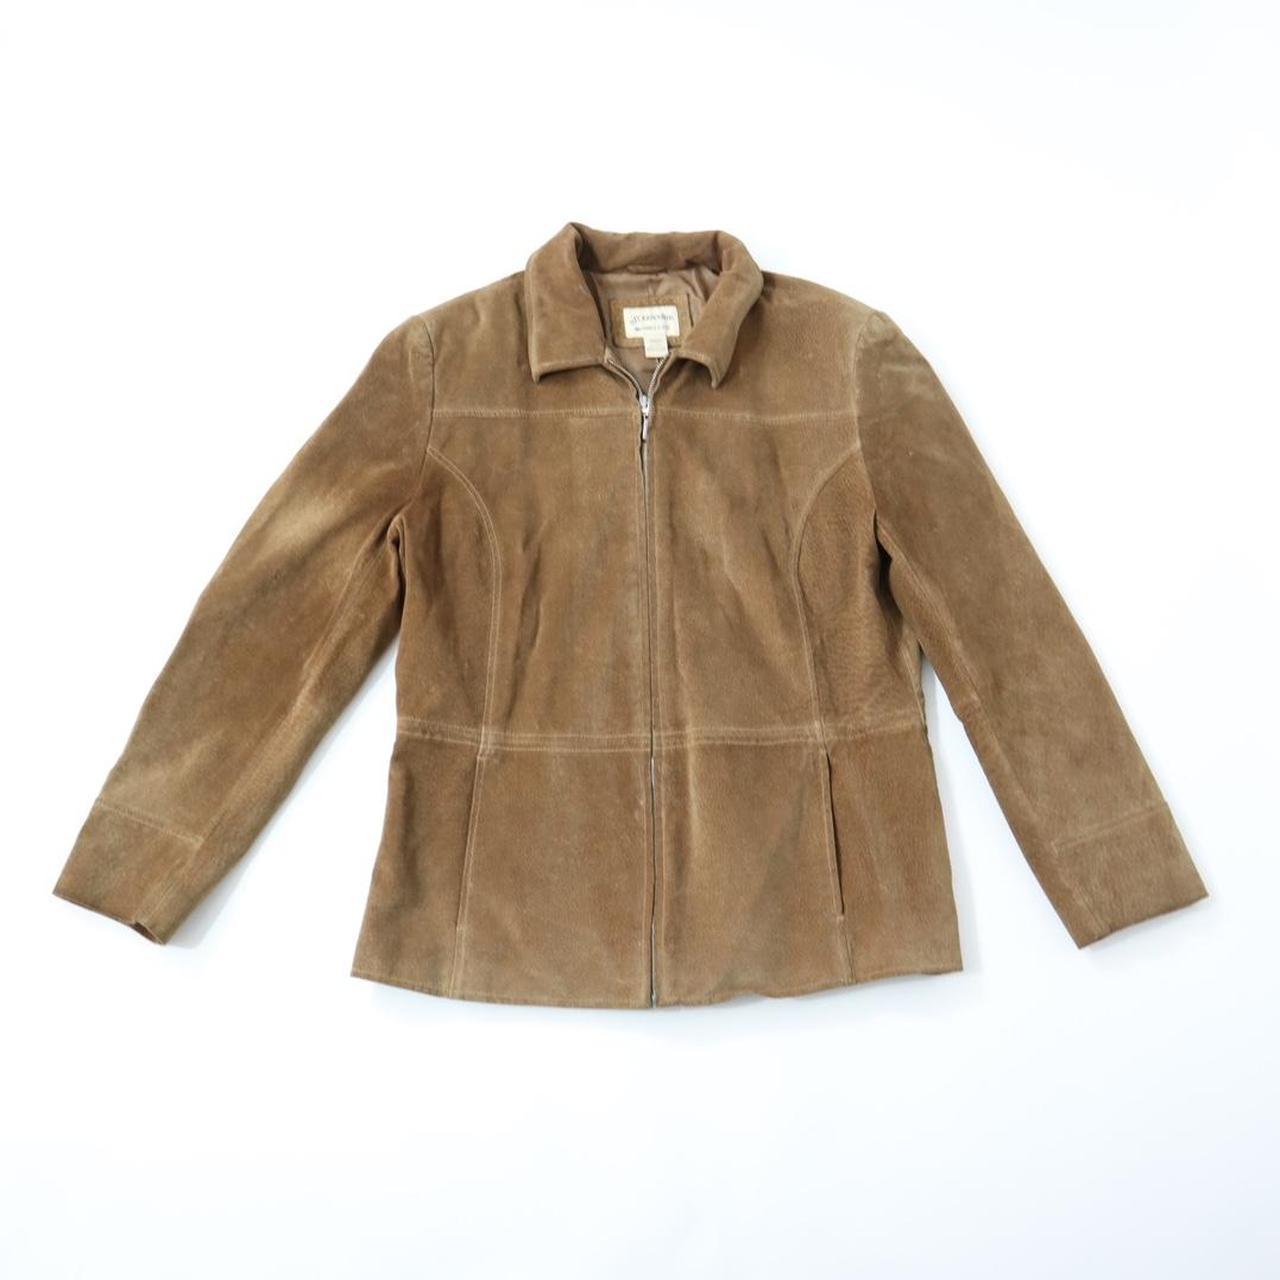 Y2k brown suede jacket Amazing streetwear high... - Depop